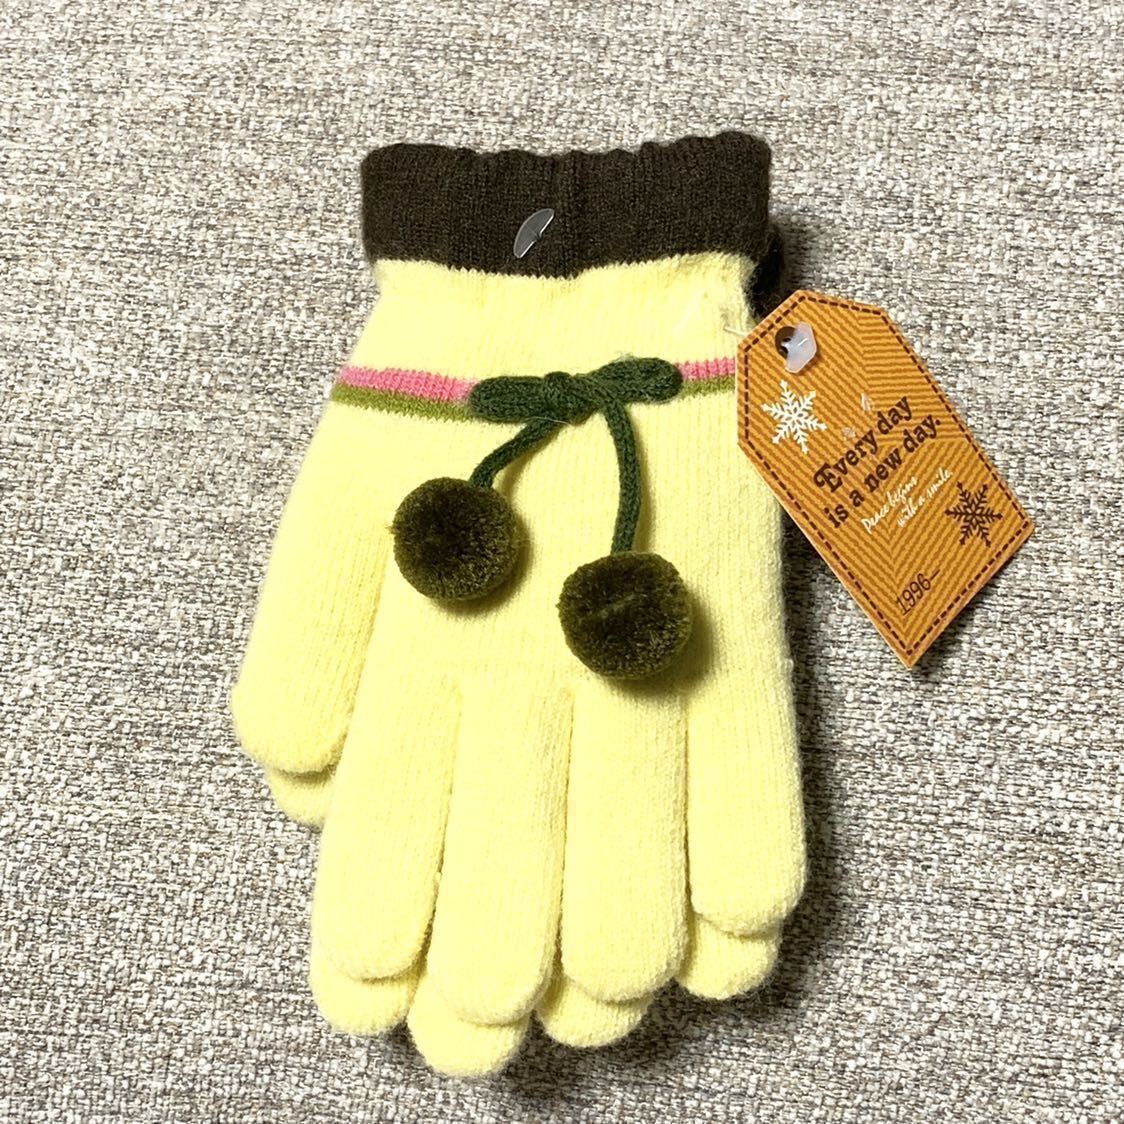  новый товар kids Kids ребенок перчатки защищающий от холода симпатичный пальто down лотерейный мешок желтый 